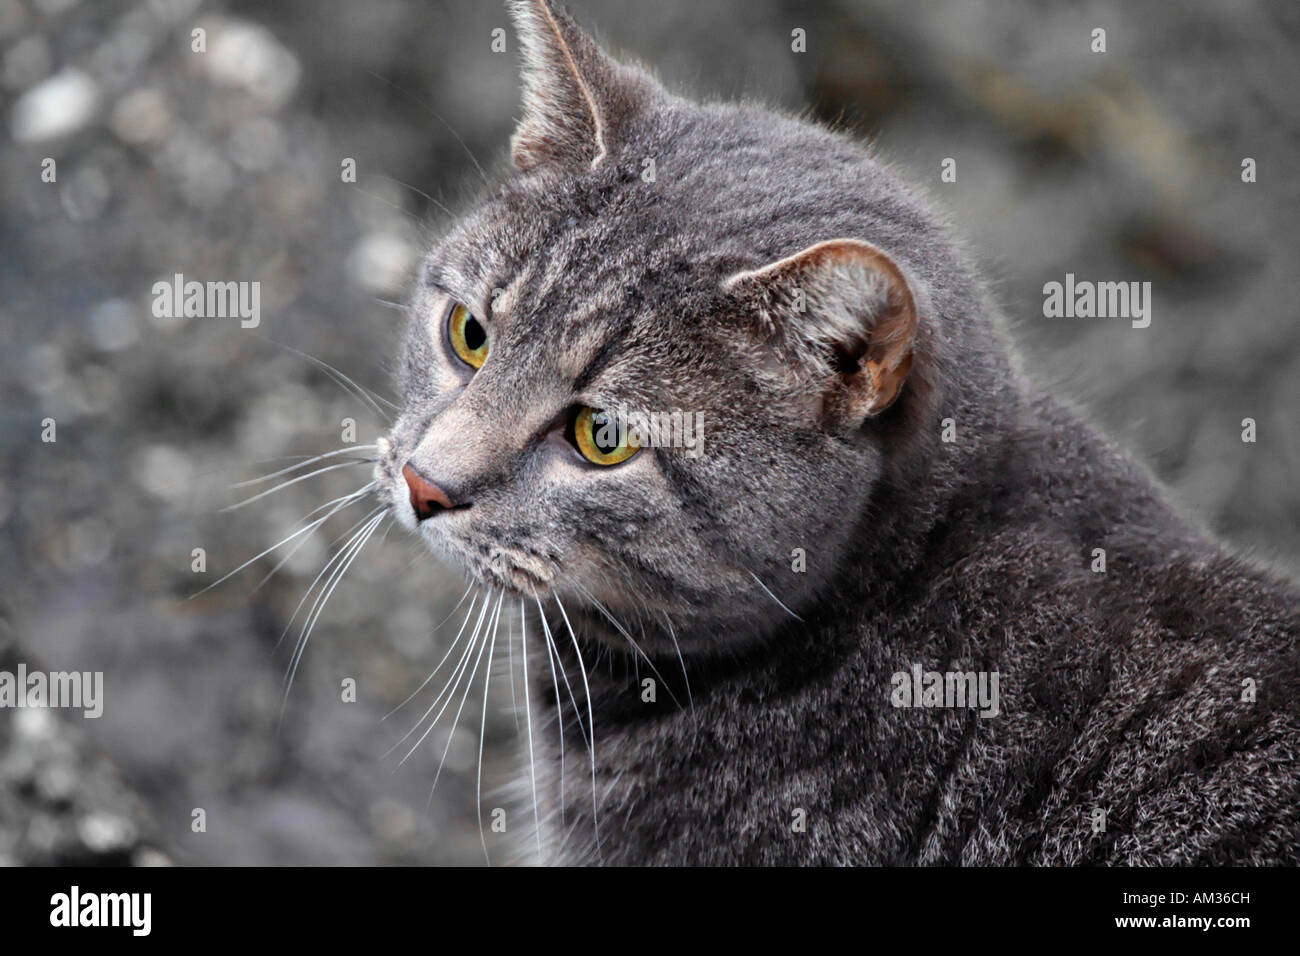 Grey tabby cat, portrait Stock Photo